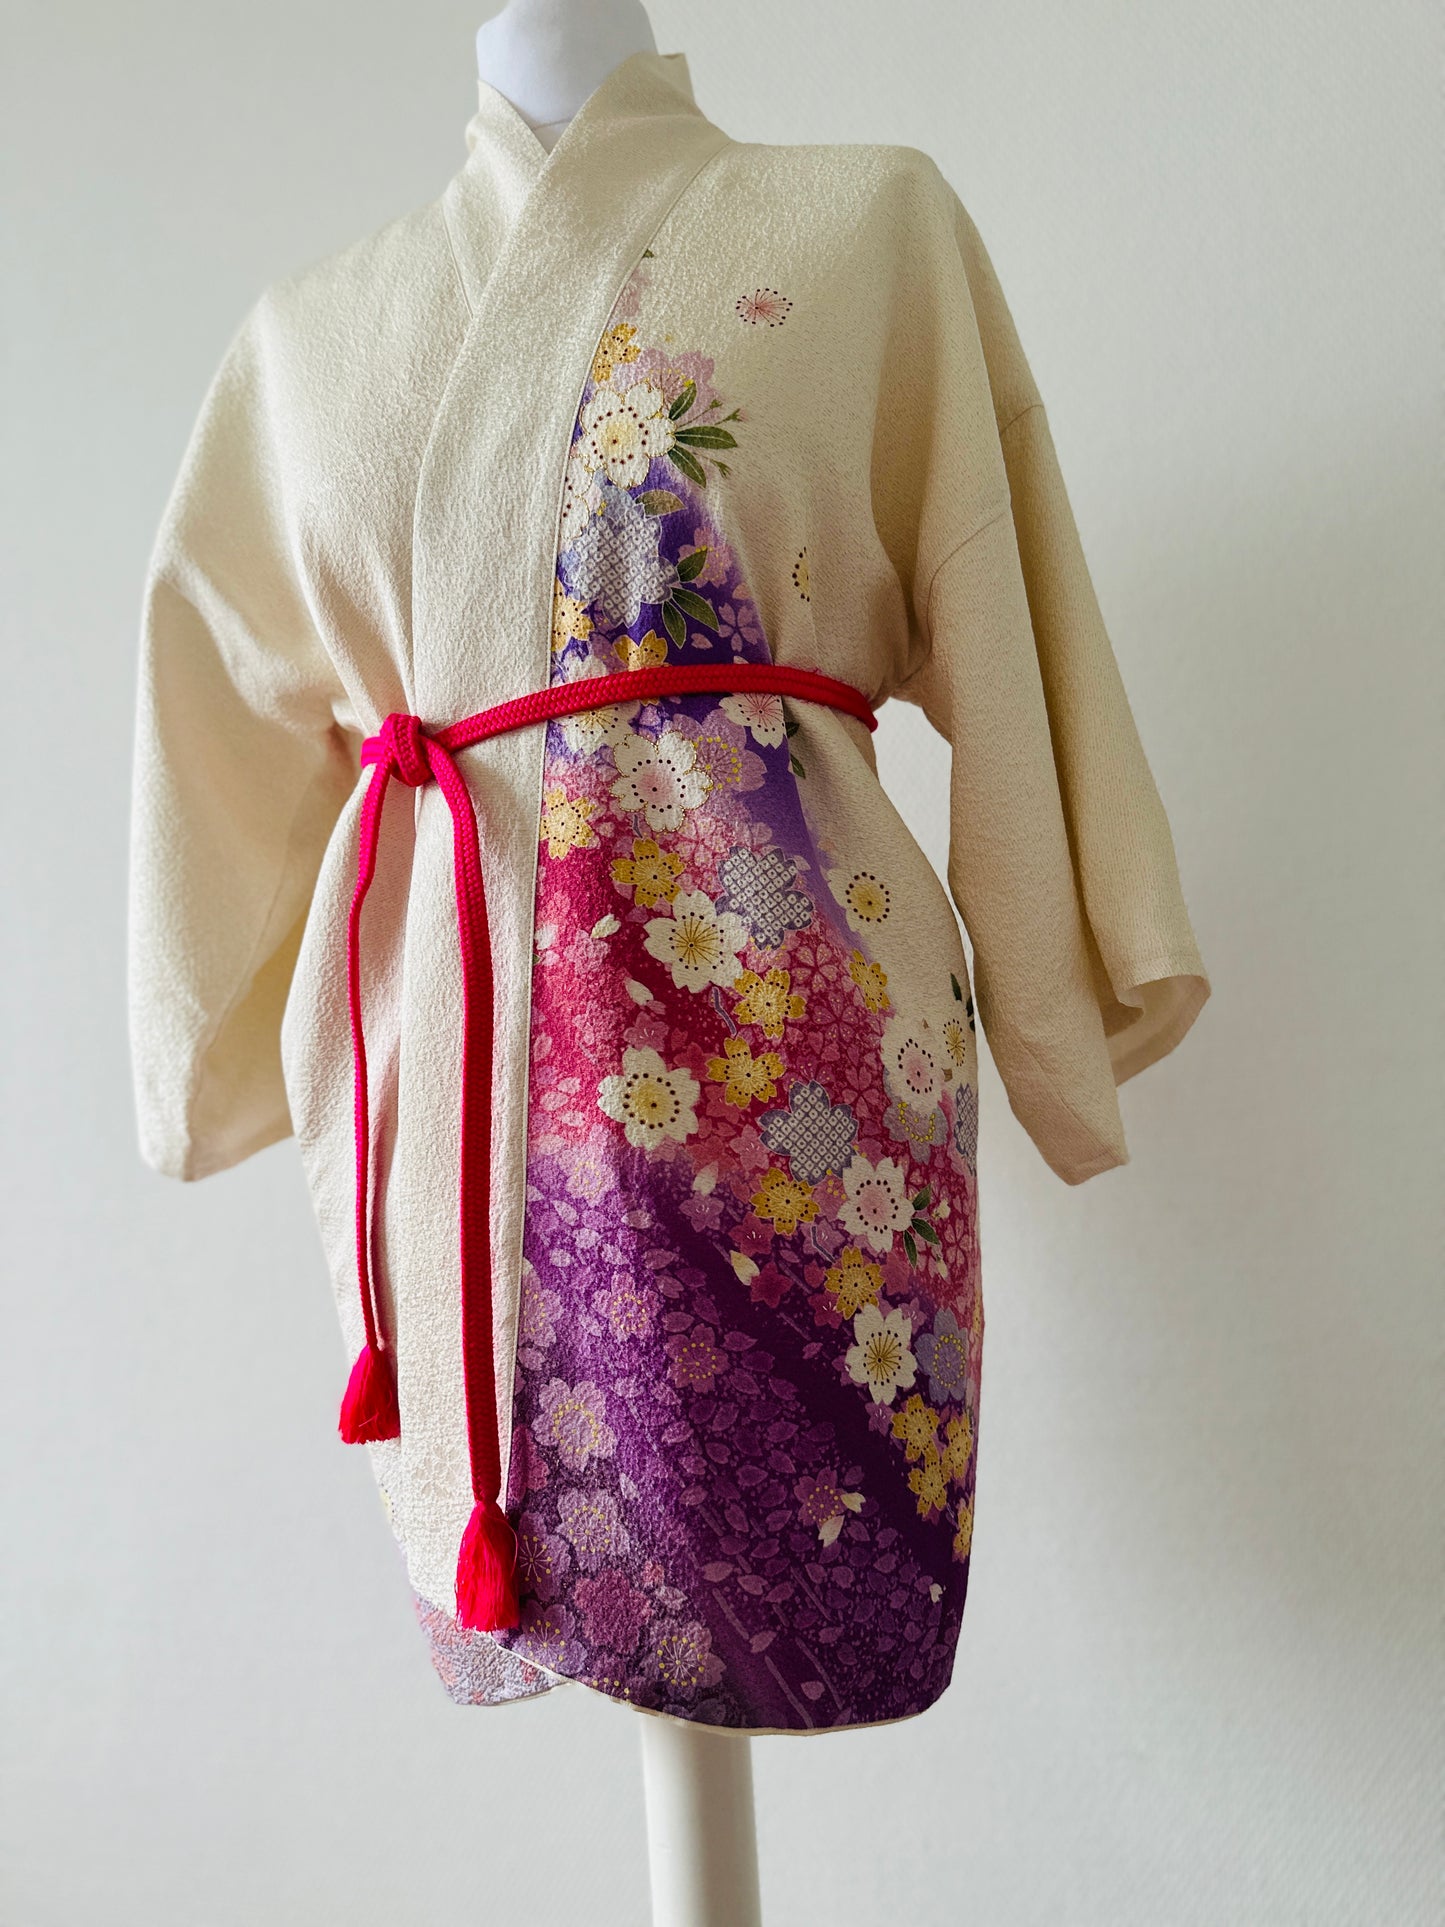 【Wit, kersenbloesem】 Happi jas ＜ Uitstekend ・ zijde ＞ voor mannen, voor vrouwen, Japanse kimono, Japan unisexese kleding, unisex, Japanse geschenken, originele ontwerpen